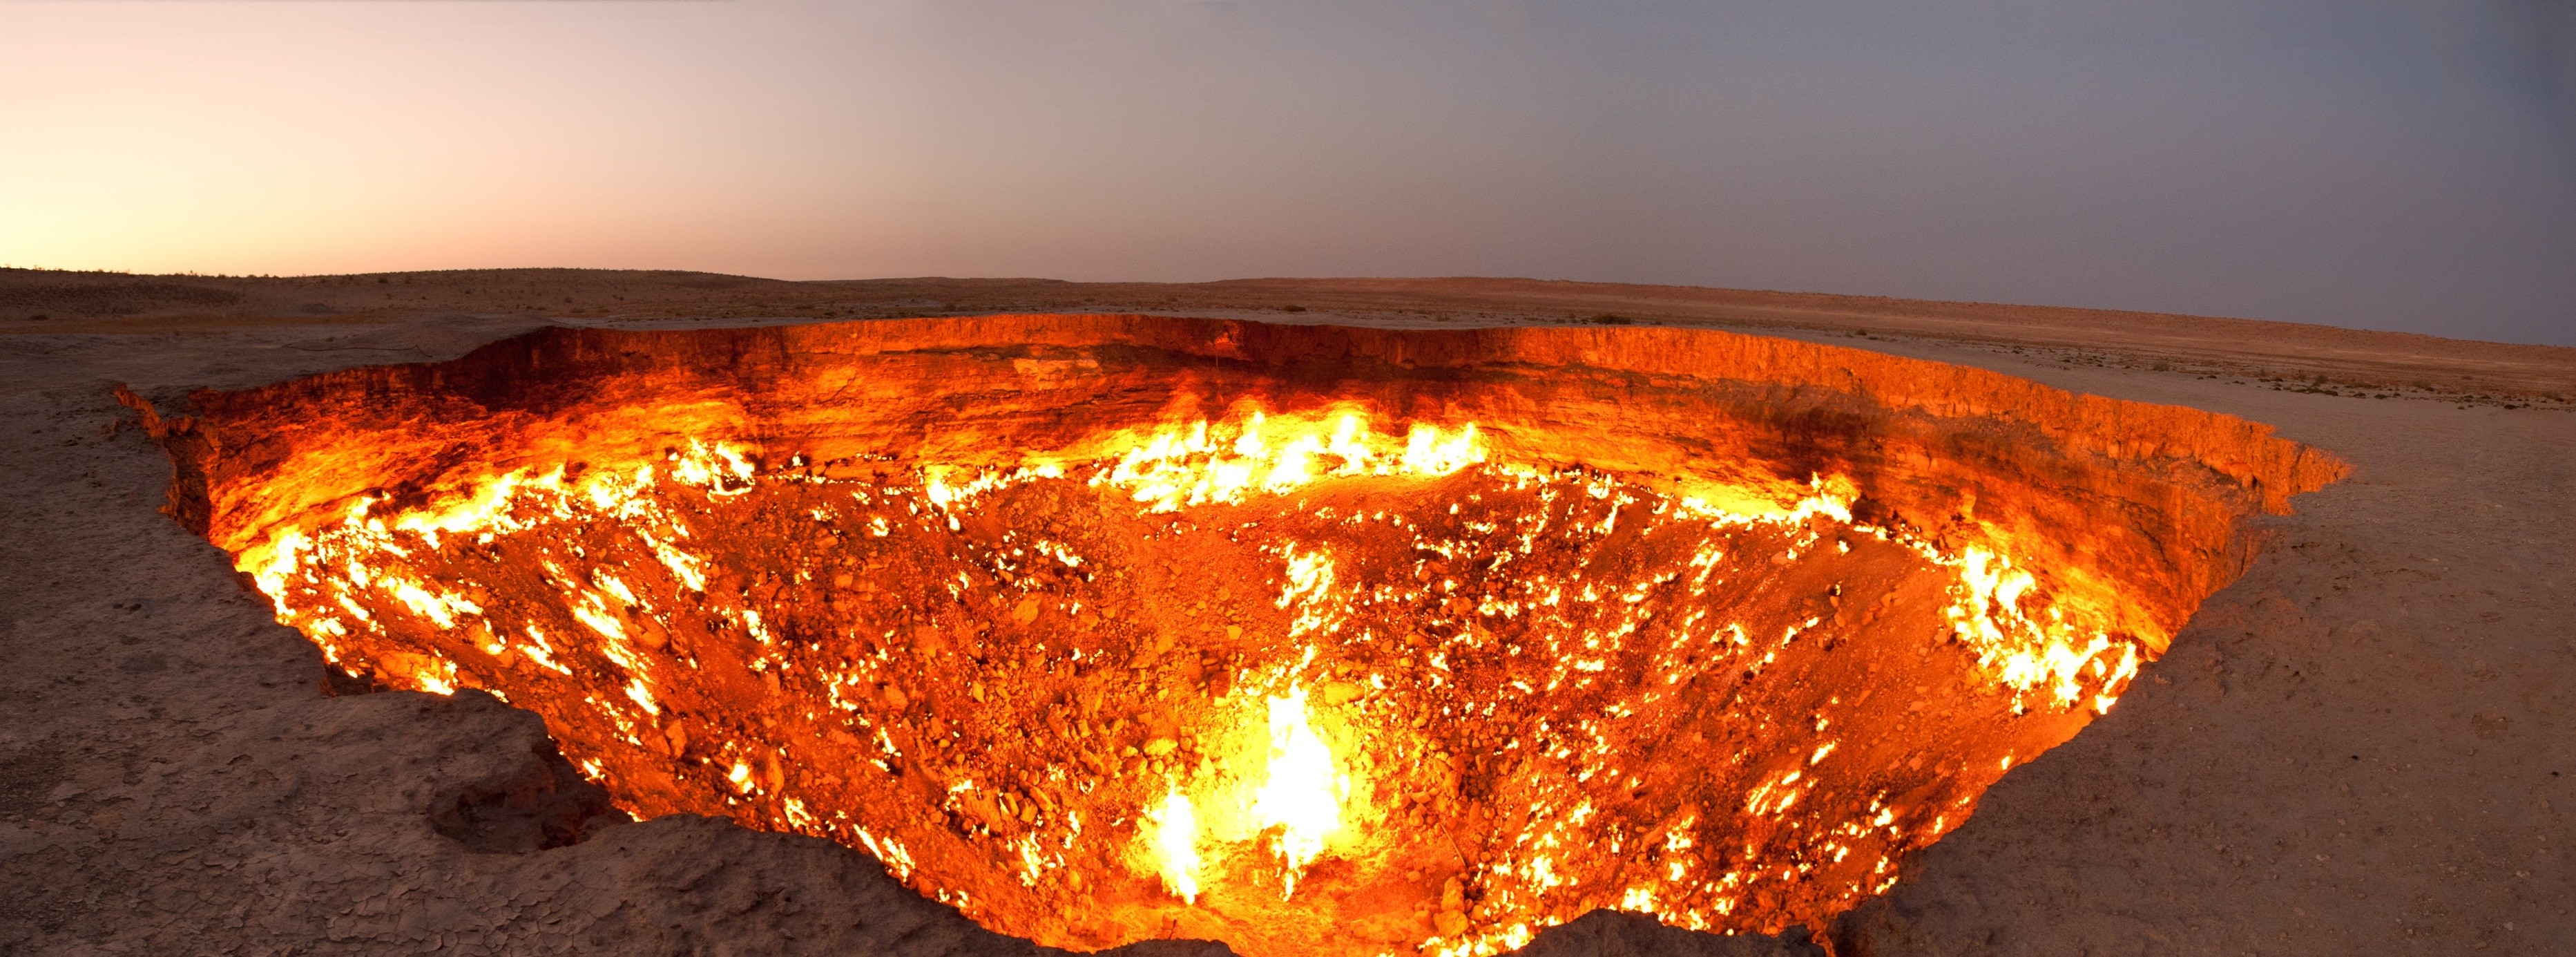 «Врата ада» — кратер Дарваза в Туркменистане. DooDler.   Дарваза официальное название кратера. Однако местные жители называют его «Дверь в преисподнюю», либо же «Врата ада». Э